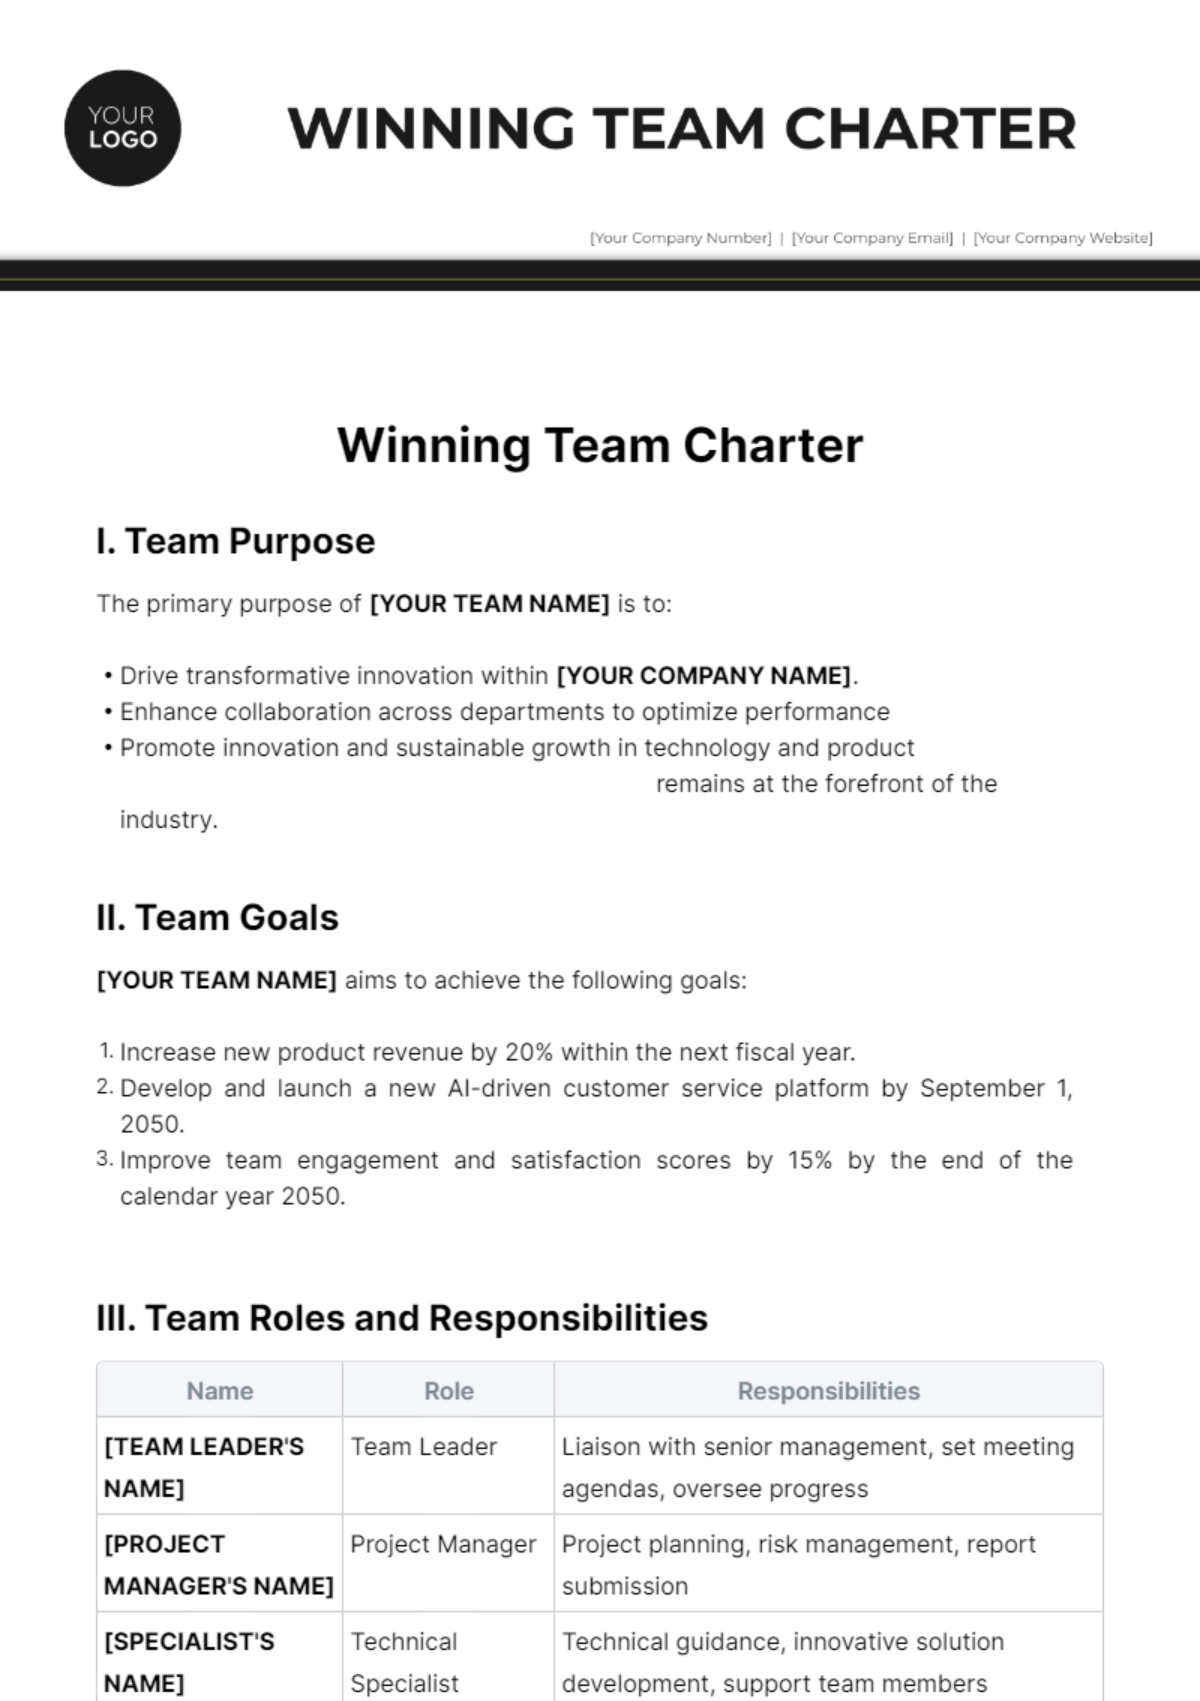 Free Winning Team Charter Template